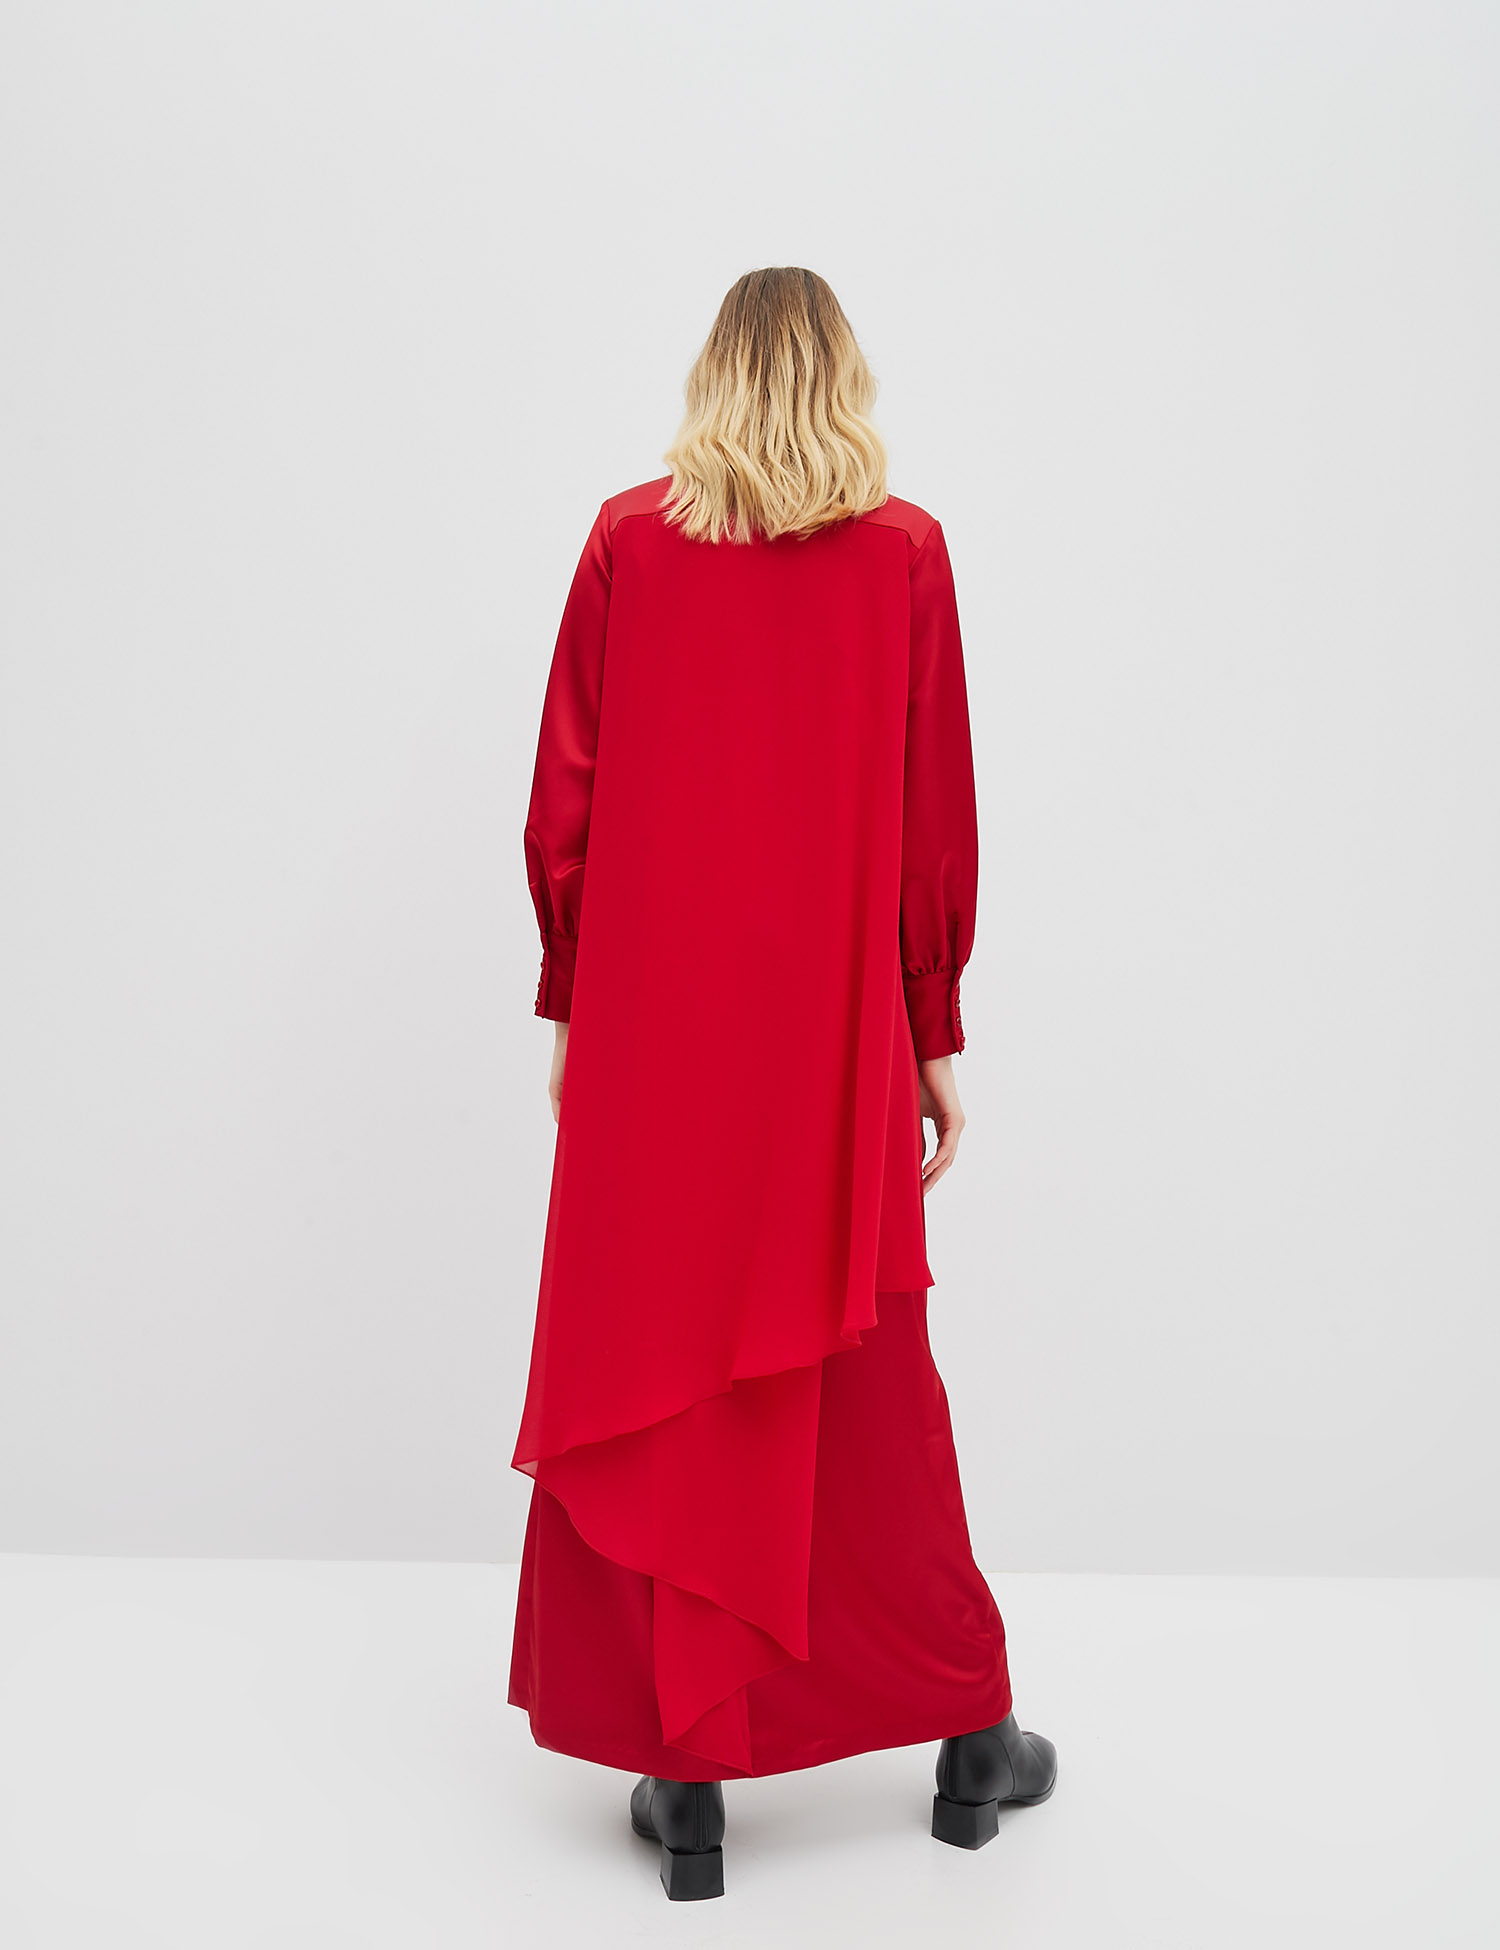 Картинка Червона сукня зі шлейфом